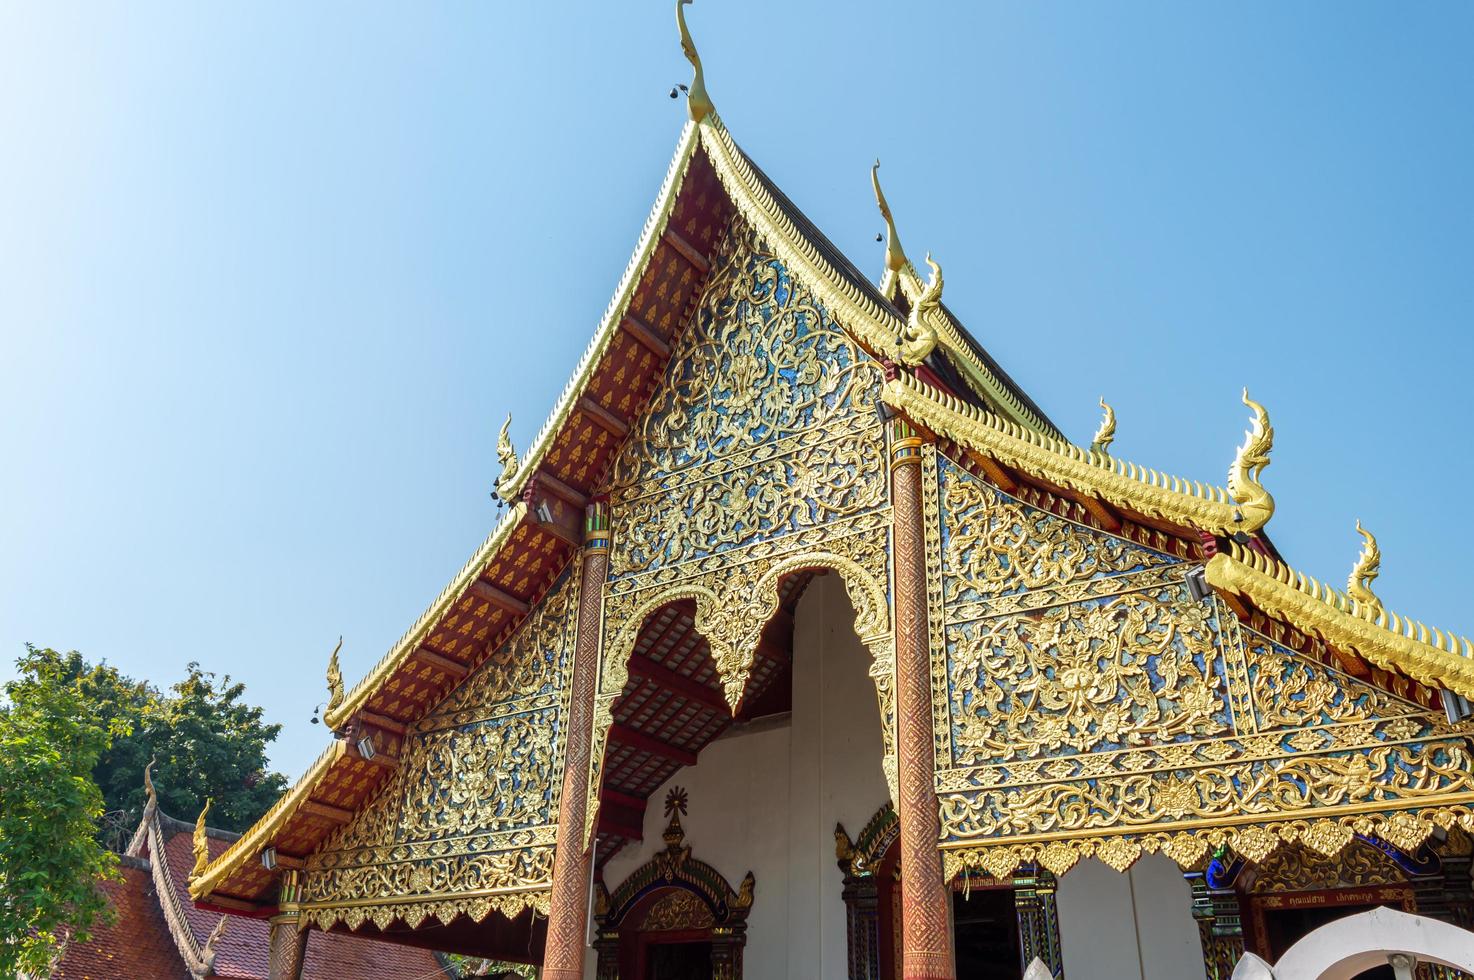 wat chiang man chiang mai tailândia10 de janeiro de 2020wat chiang man foi construído por mangrai 209 em 1297. foi o primeiro templo em chiang mai a localização de wiang nop buri uma fortaleza do povo lawa. foto